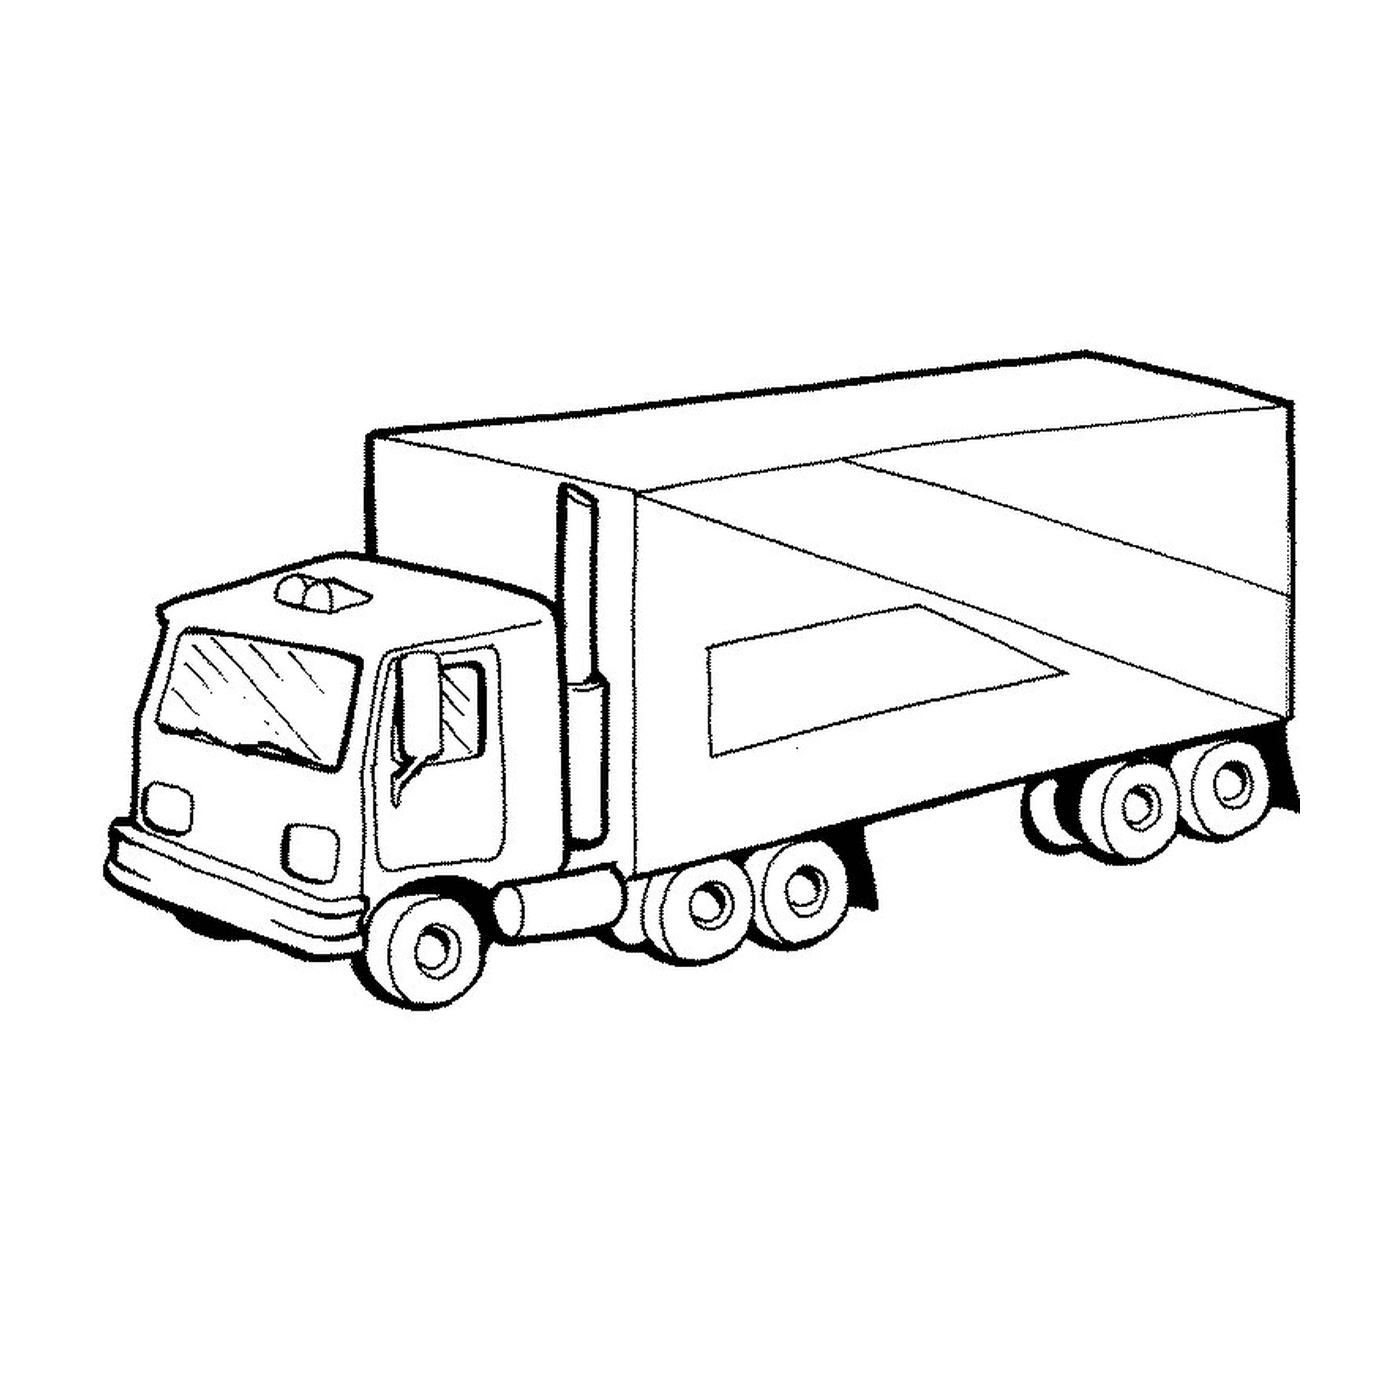  Un camion 